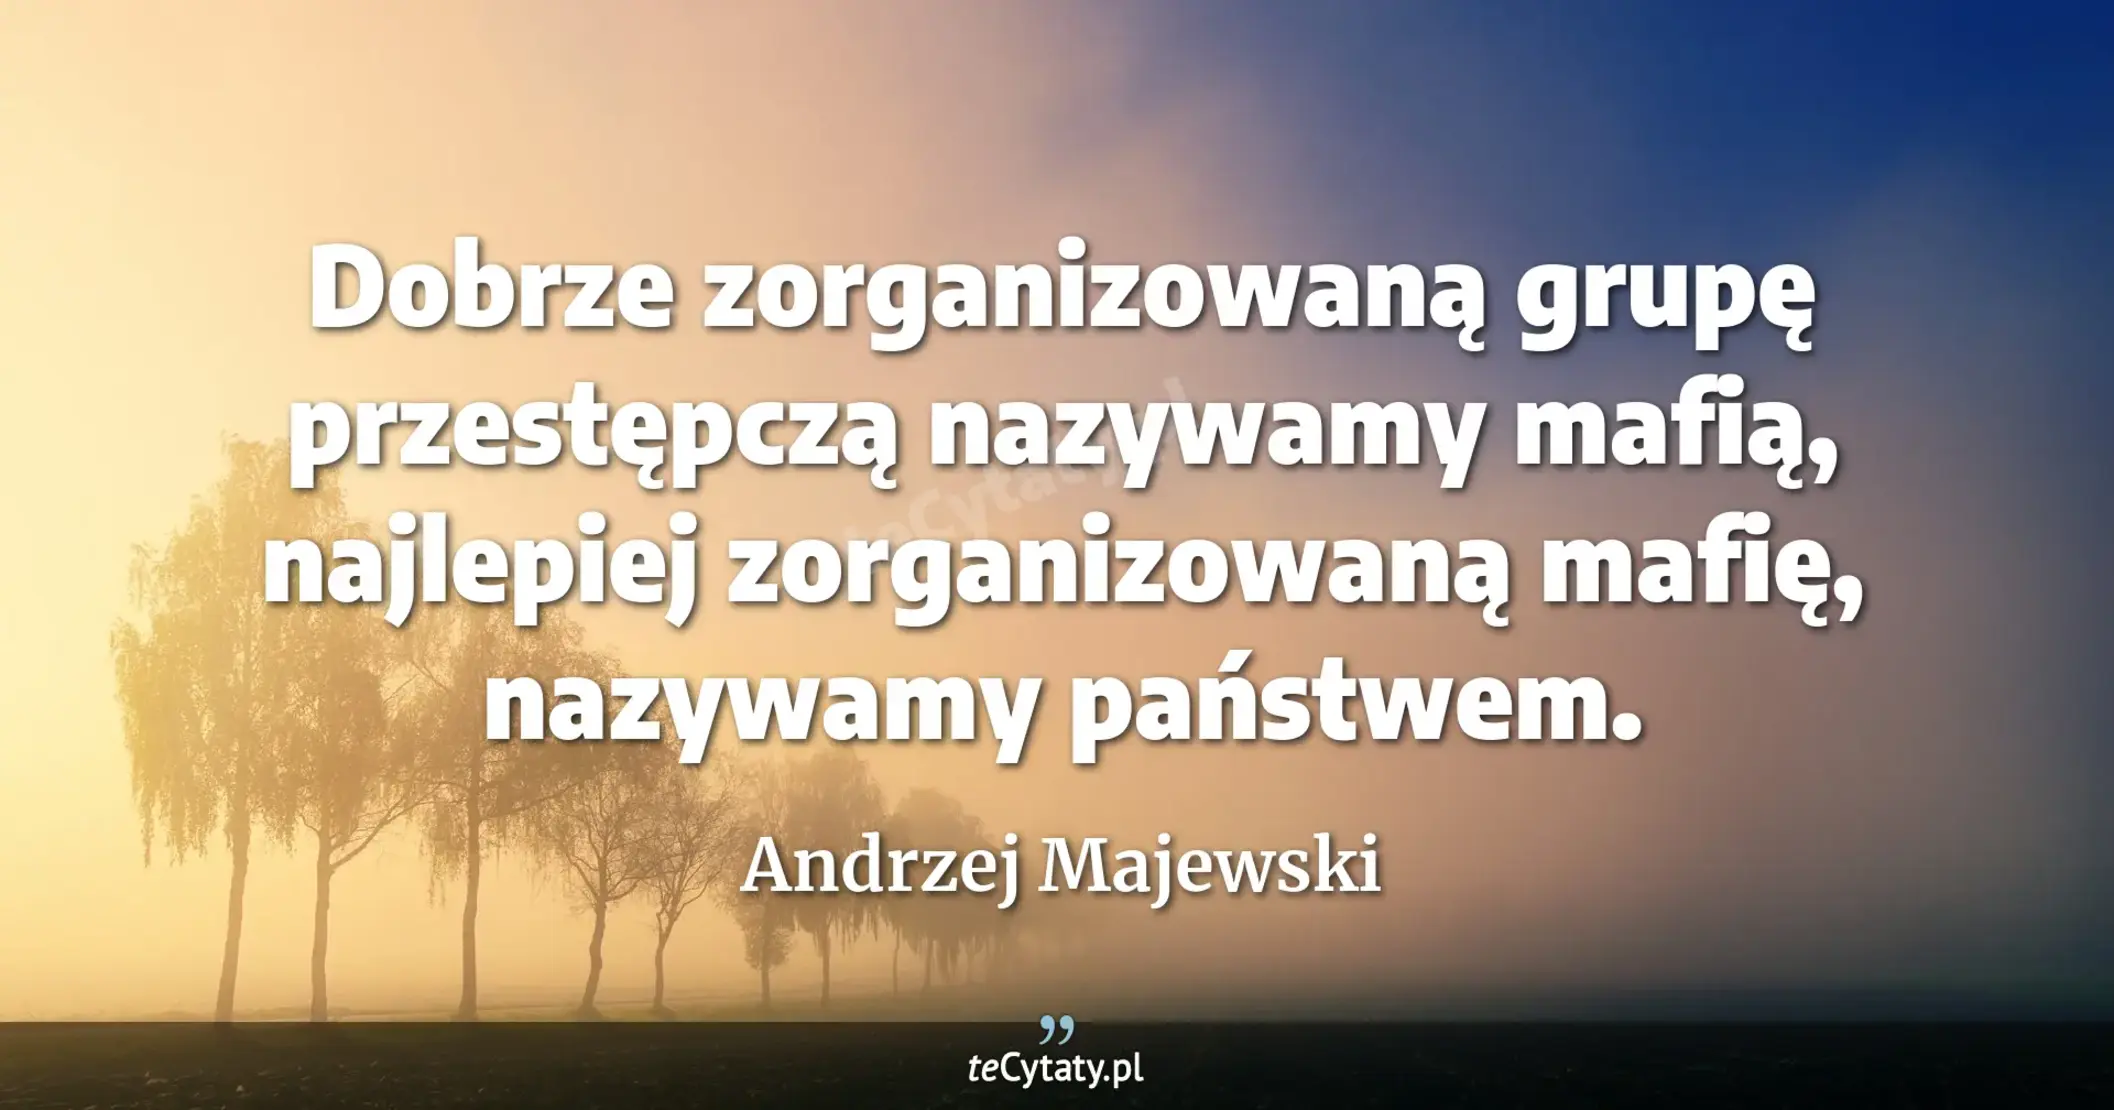 Dobrze zorganizowaną grupę przestępczą nazywamy mafią, najlepiej zorganizowaną mafię, nazywamy państwem. - Andrzej Majewski